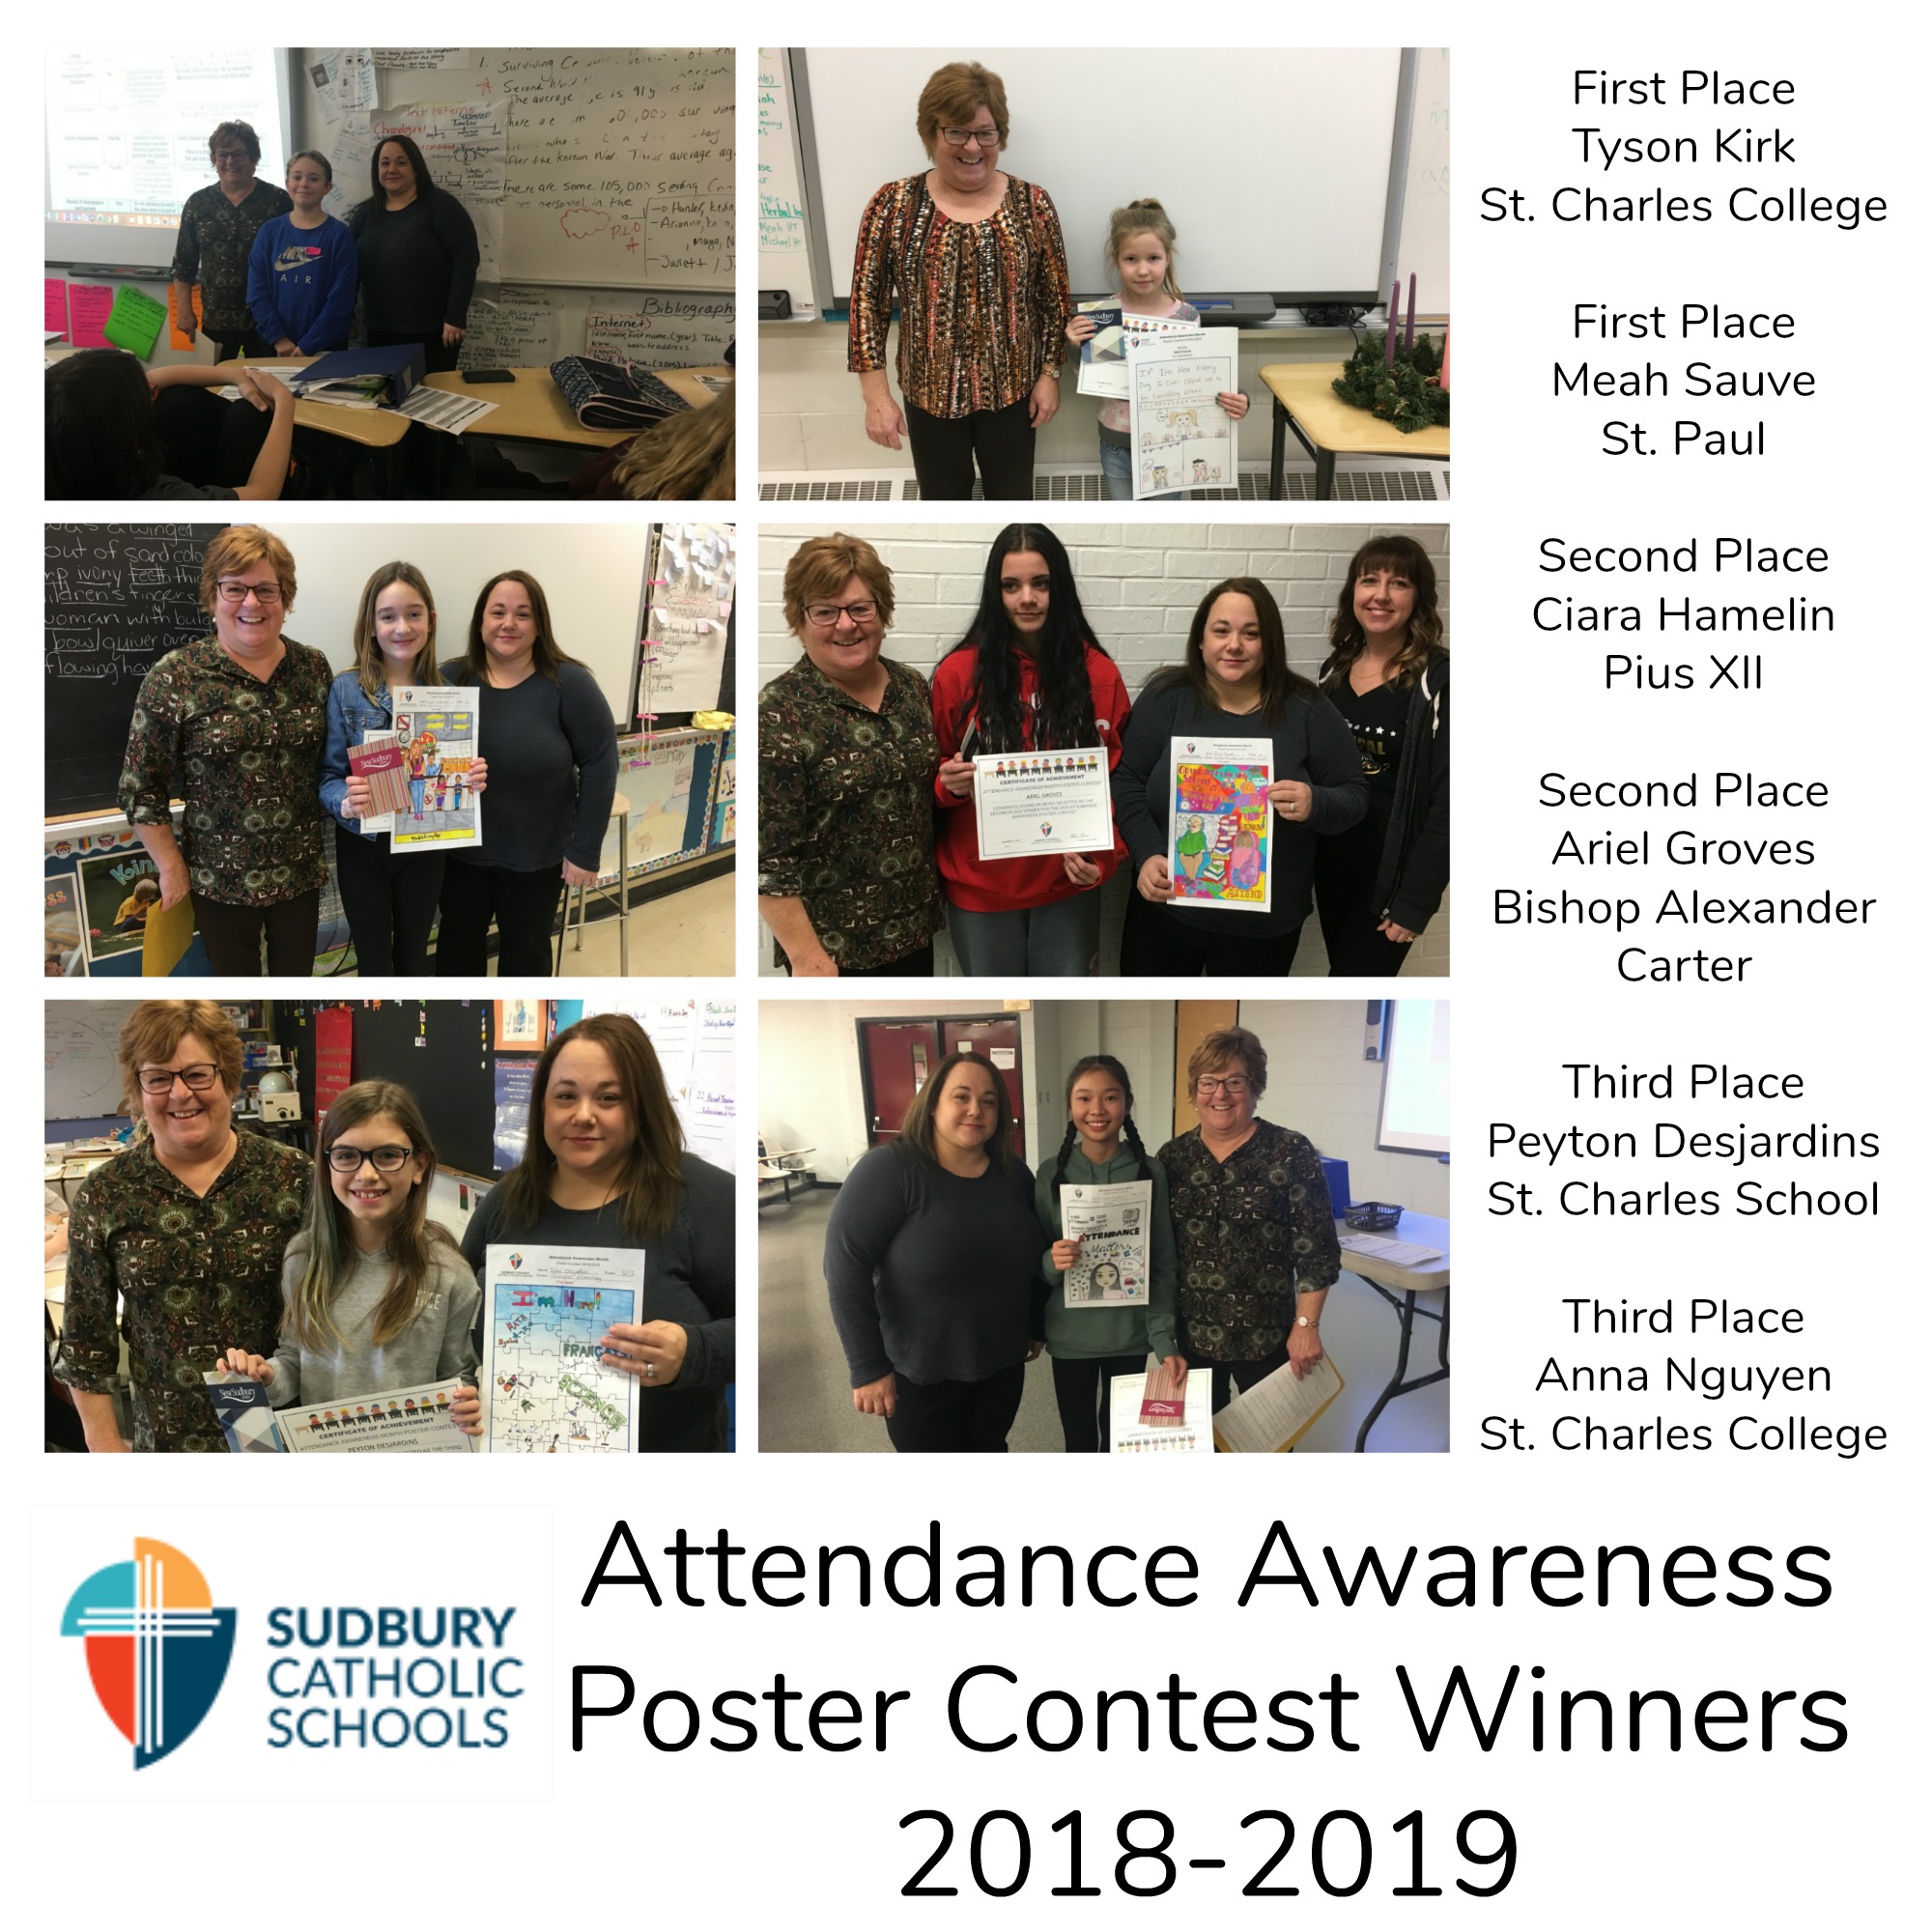 Attendance Awareness Poster winners announced!